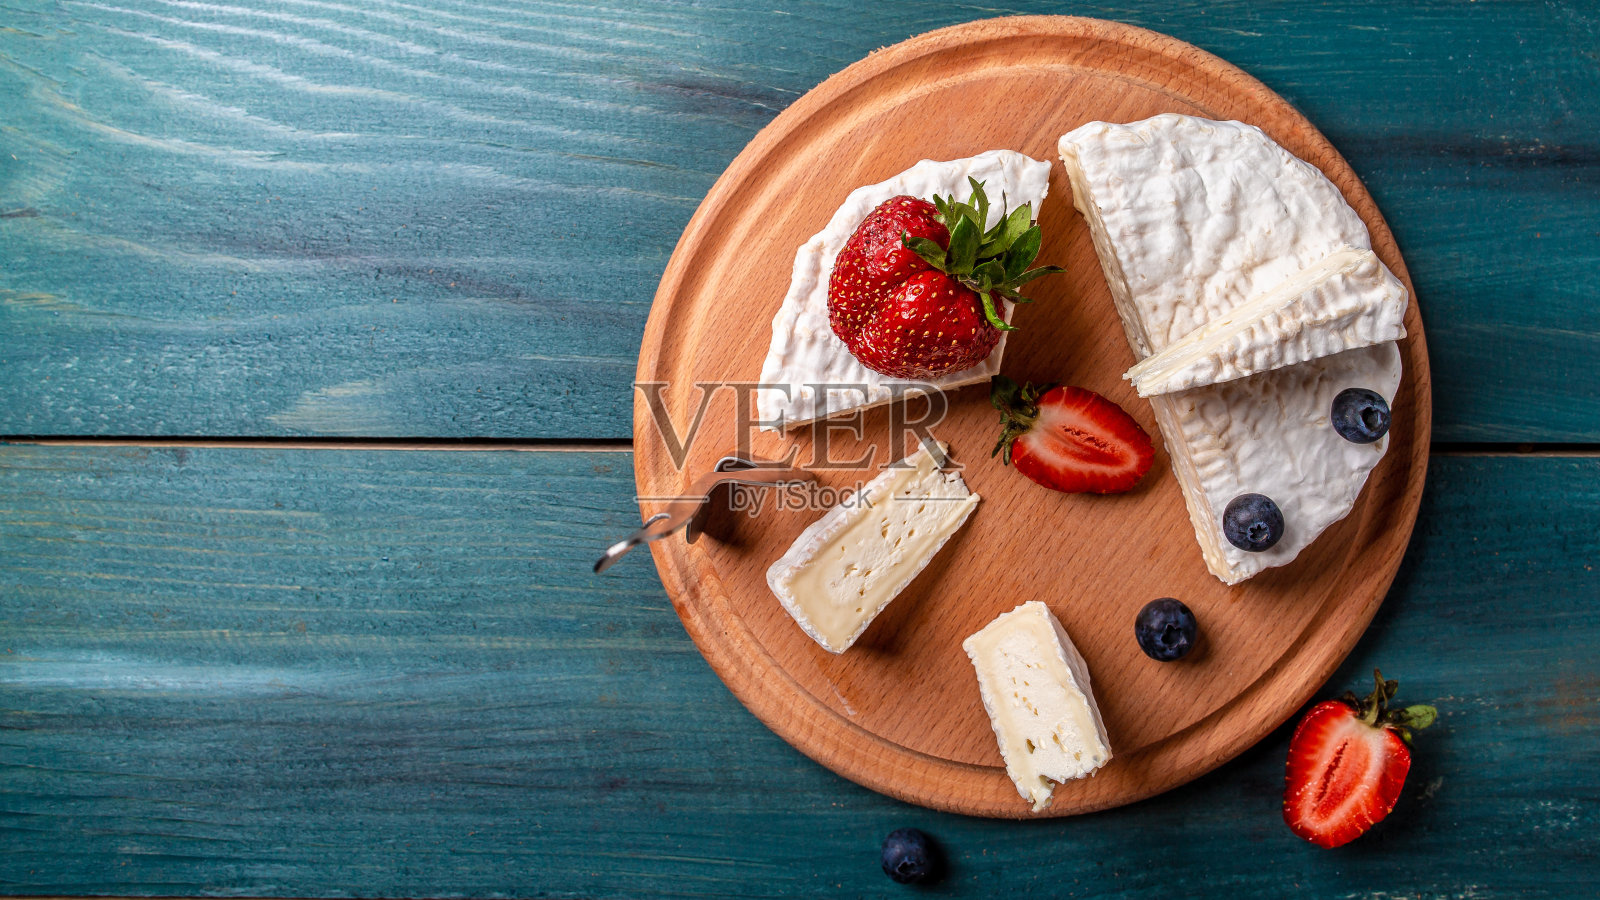 布里奶酪。卡蒙伯尔的奶酪。新鲜的布里干酪和一片带浆果的木板。意大利、法国奶酪。食品配方的背景。空间的文本。俯视图照片摄影图片